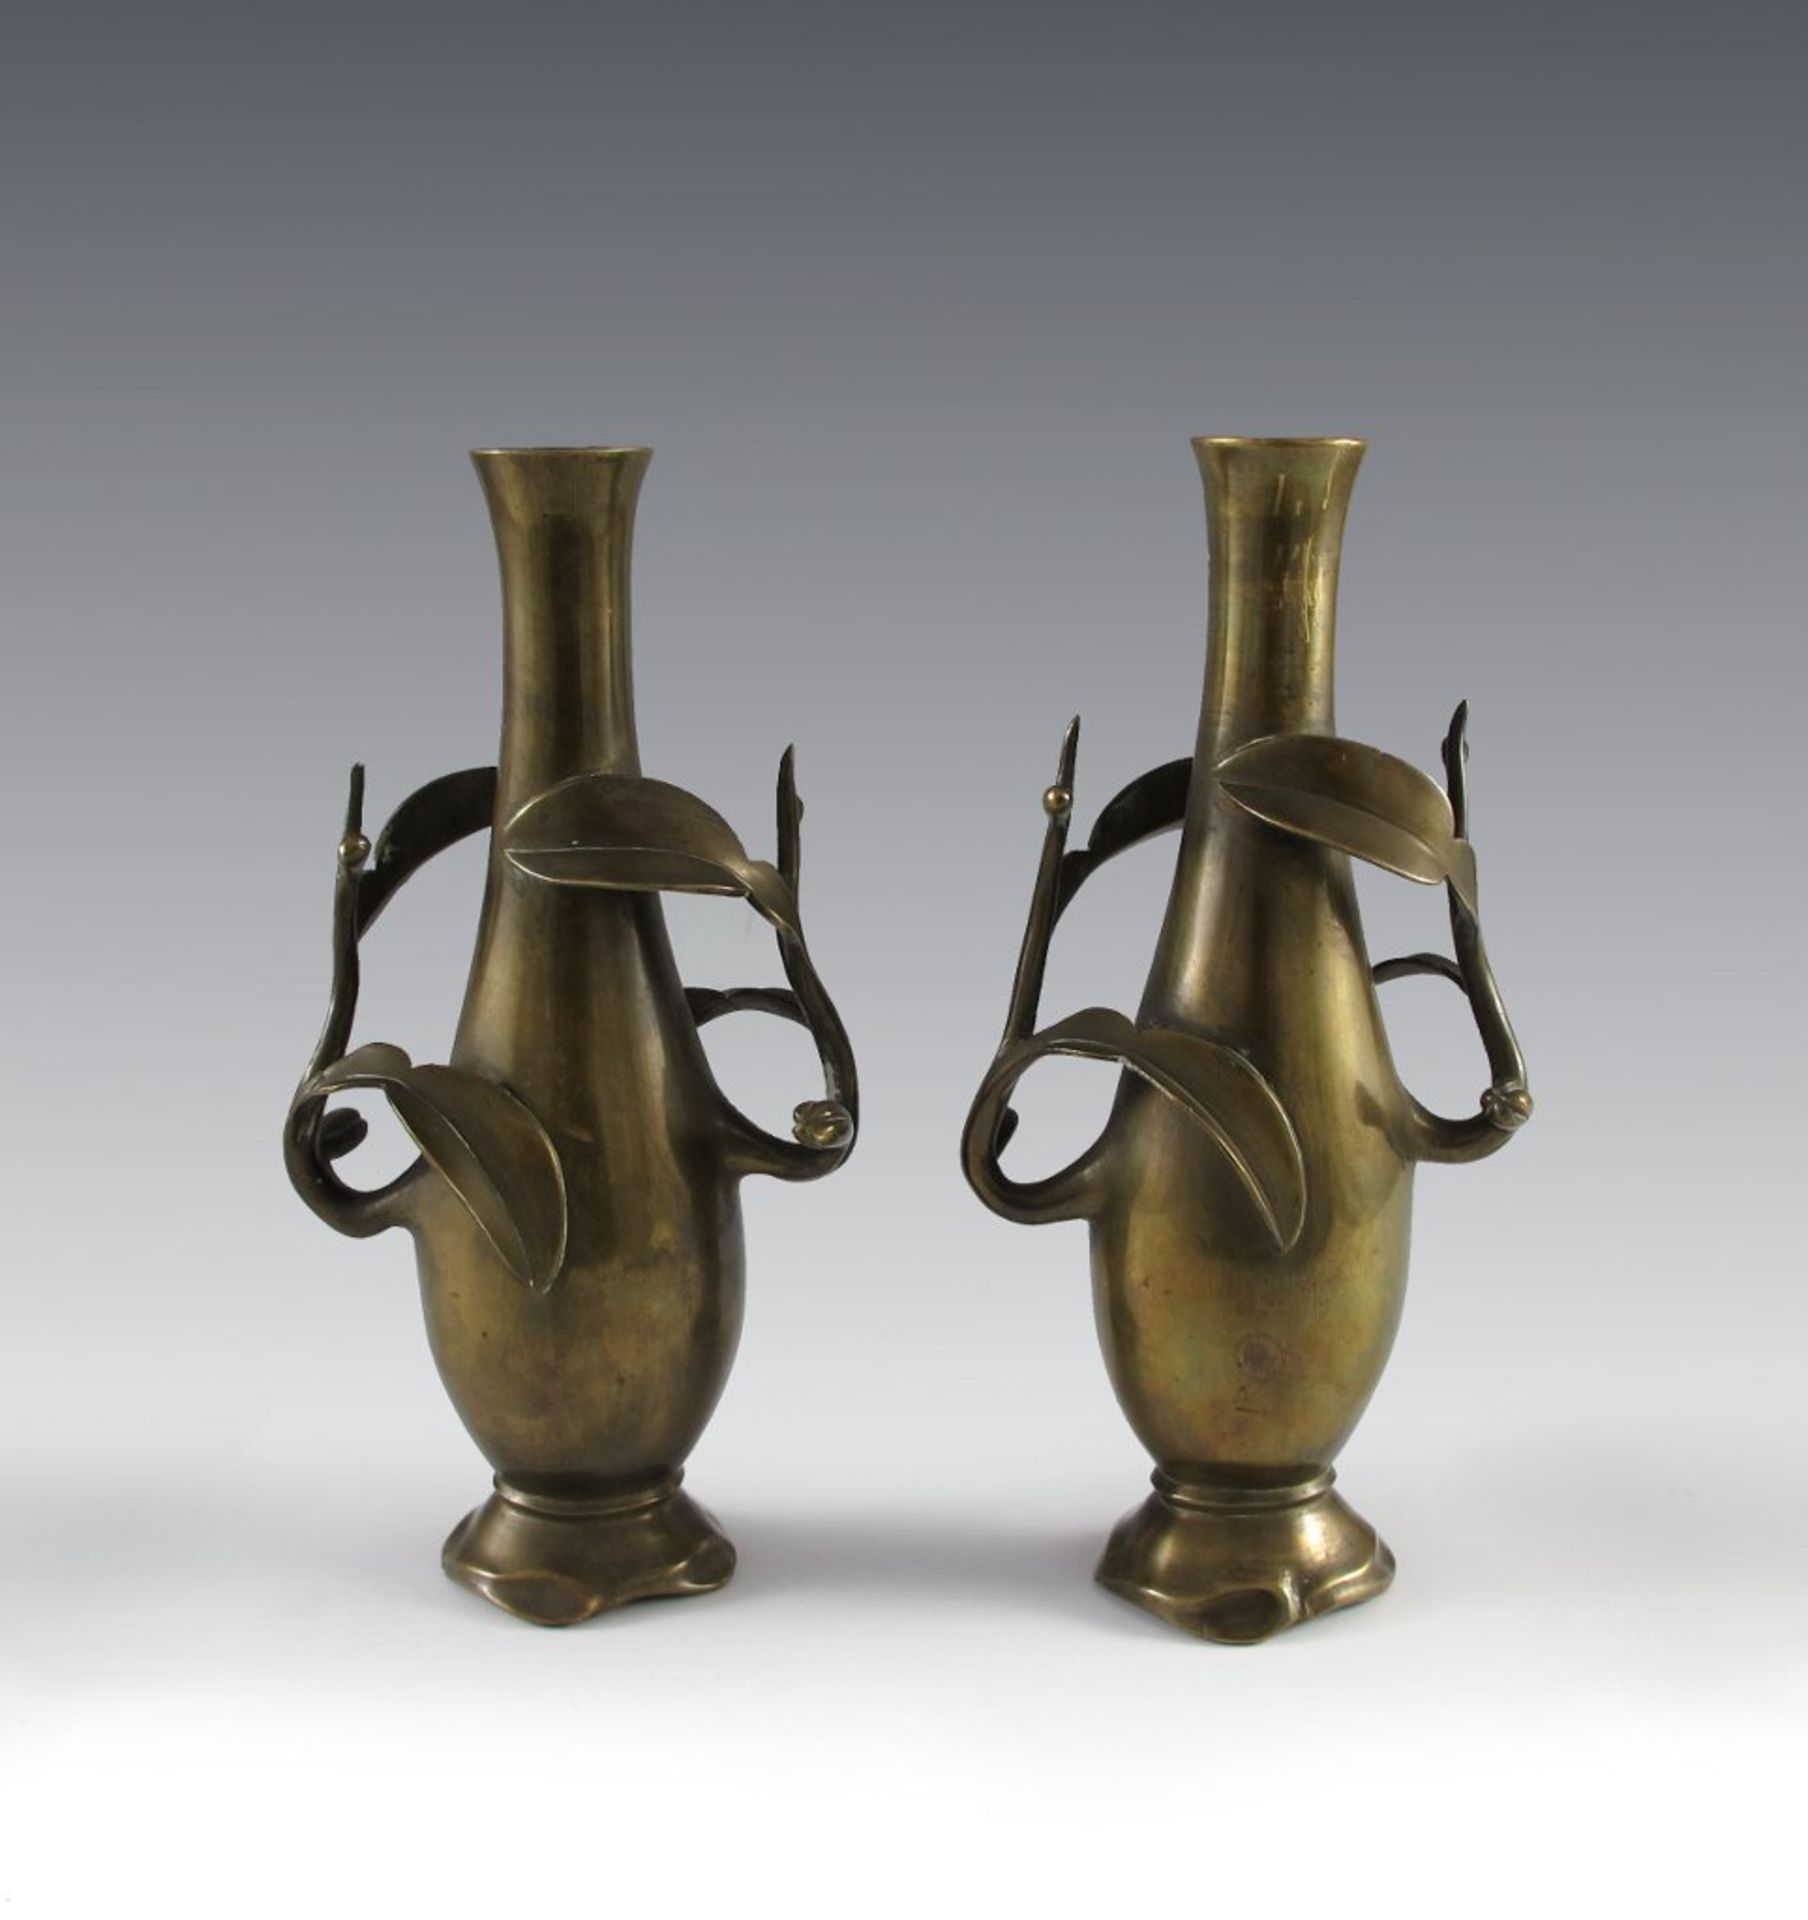 Paar Art-Déco-Vasen. Flaschenform mit aufgesetztem Ast- und Blattwerk. Gelbguss. Um 1920. H 23,5 cm